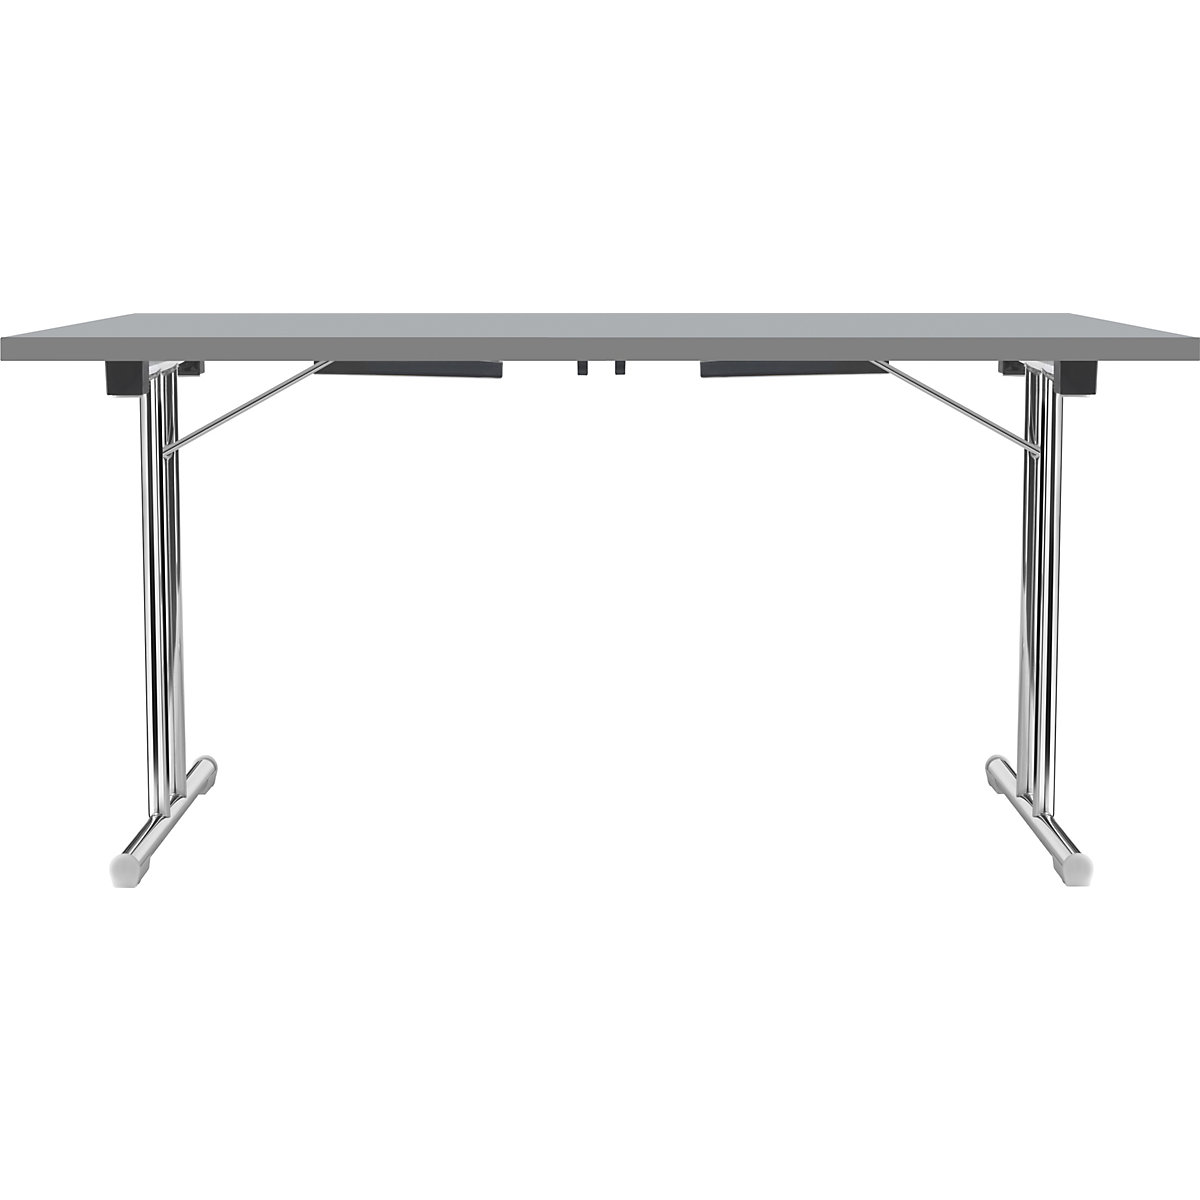 Tavolo pieghevole con basamento a T doppio, telaio in tubo tondo d'acciaio, cromato, grigio chiaro/antracite, largh. x prof. 1200 x 600 mm-14